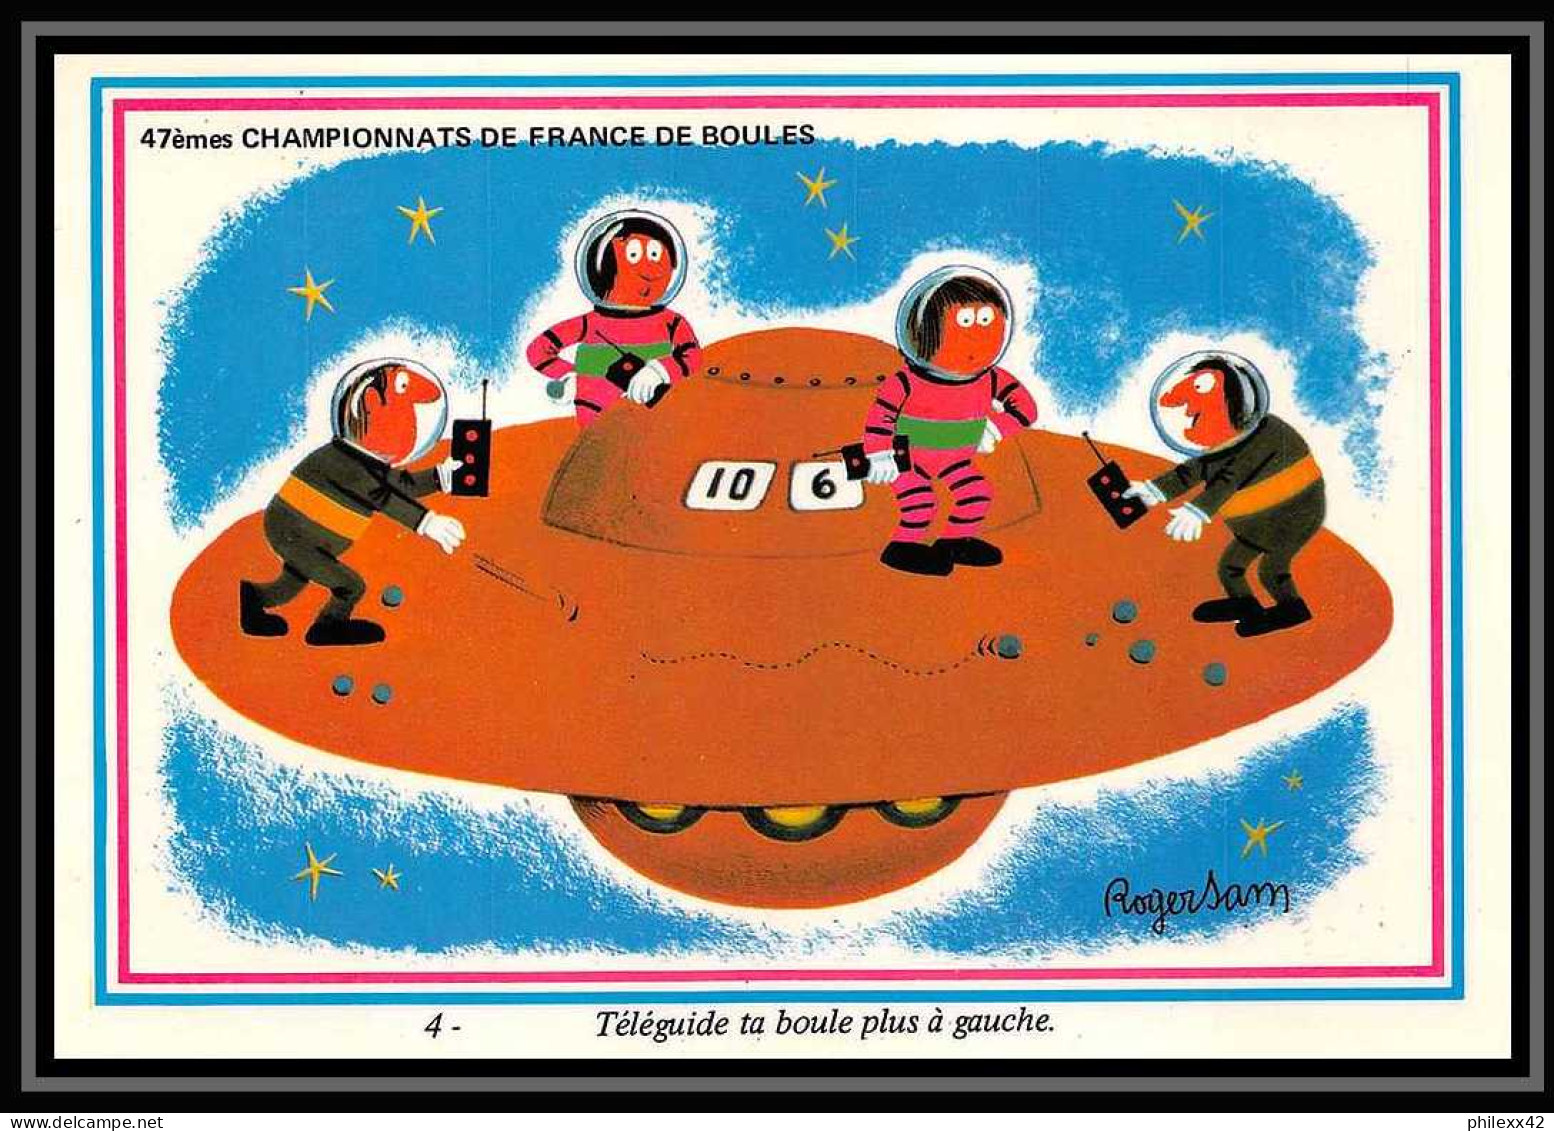 5668/ lot de 4 cartes postales  France 47èmes championnats de france de boules pétanque 1973 